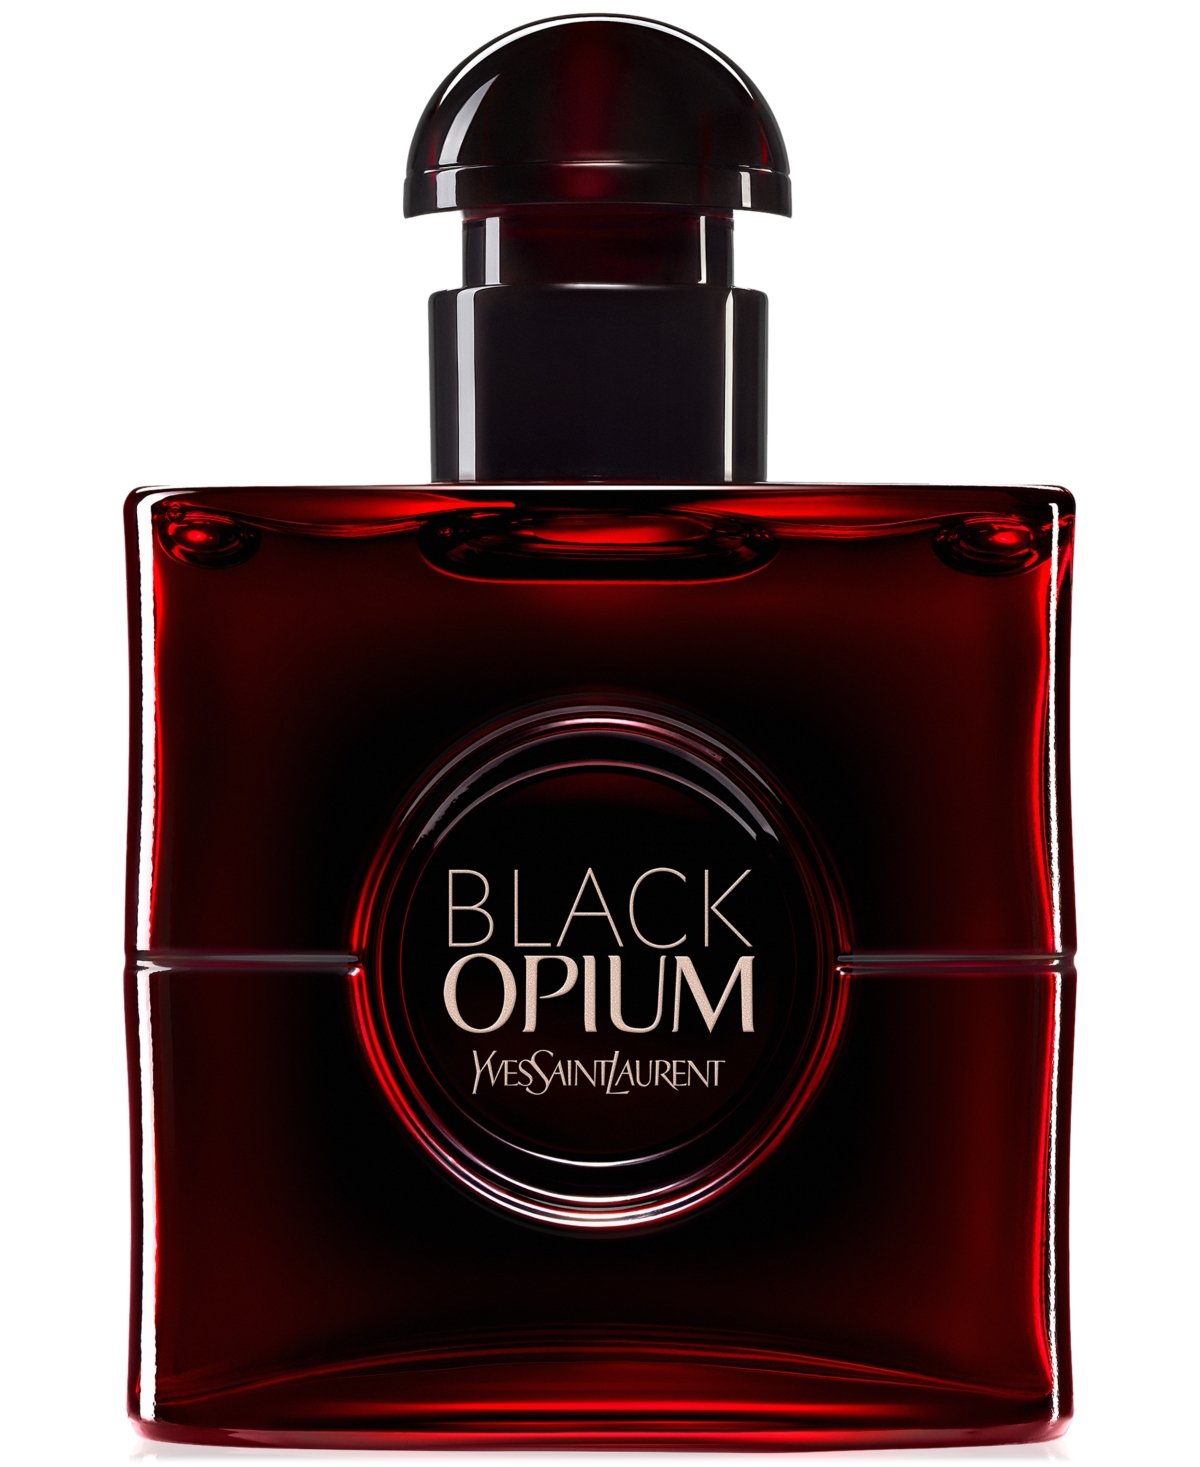 Black Opium Eau de Parfum Over Red, 1 oz.